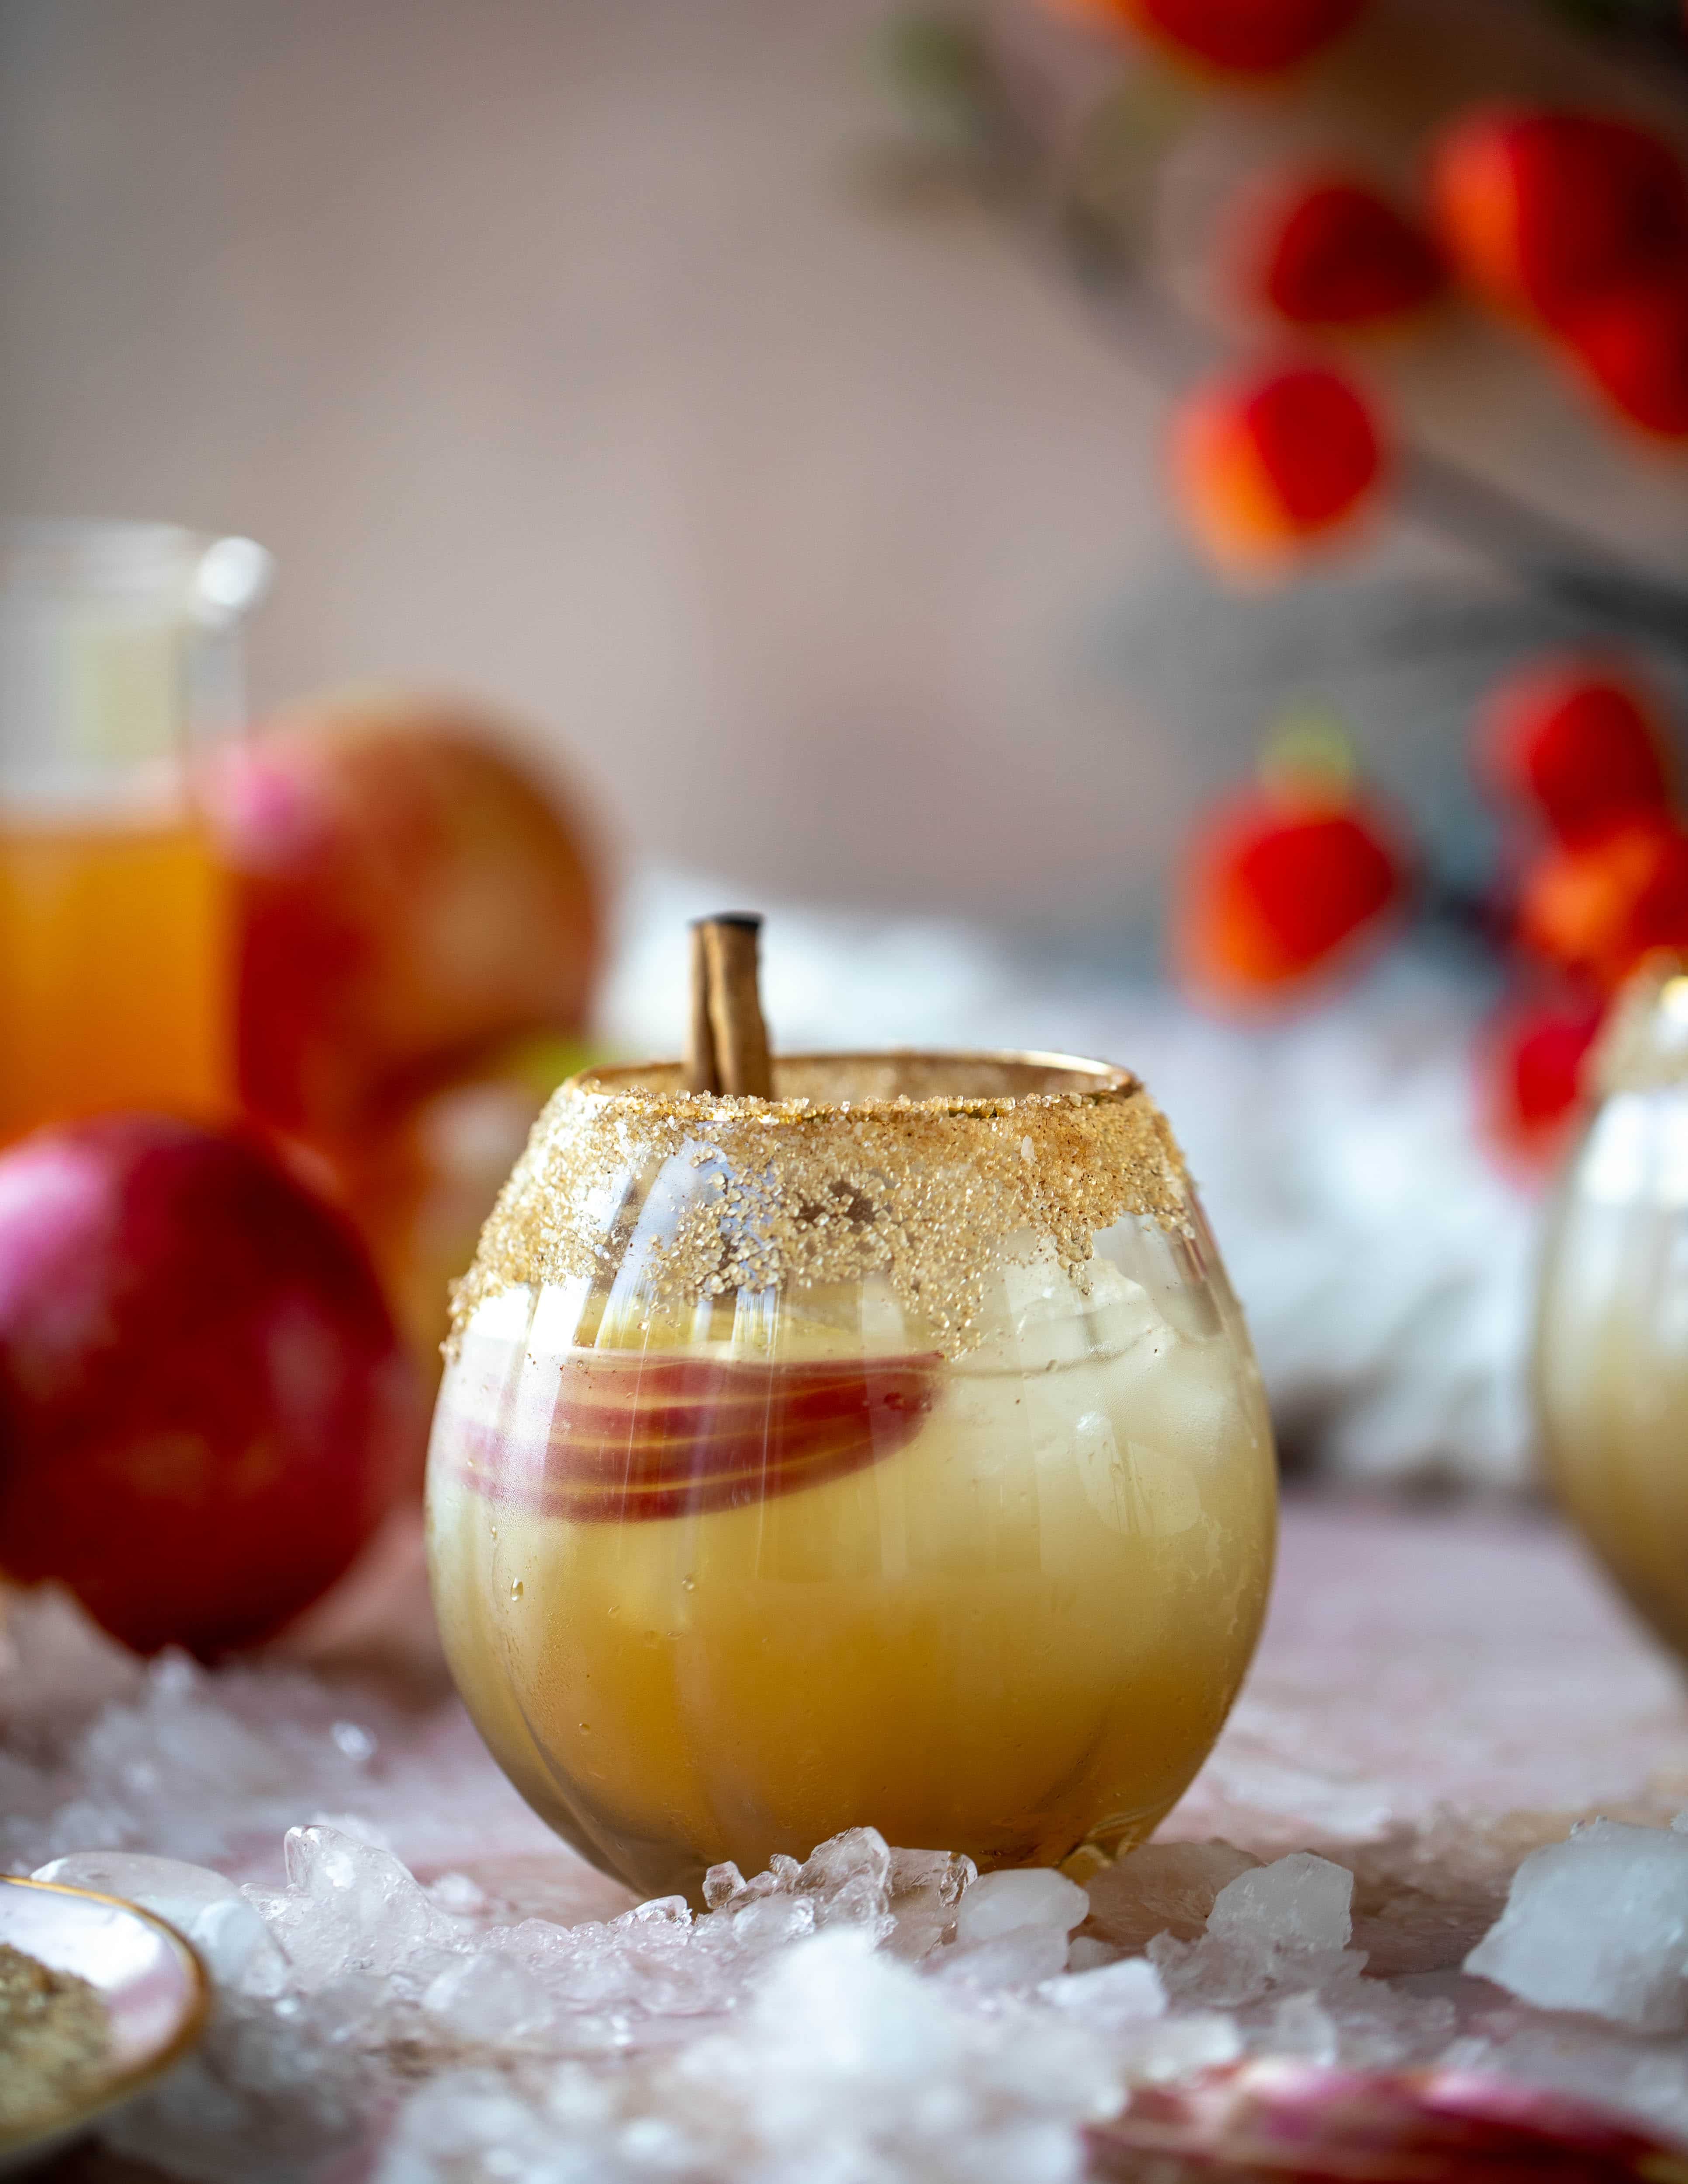 这款苹果酒梅兹卡尔玛格丽塔是一款美味的秋季烟熏鸡尾酒!一下子又暖又爽又好吃。干杯!